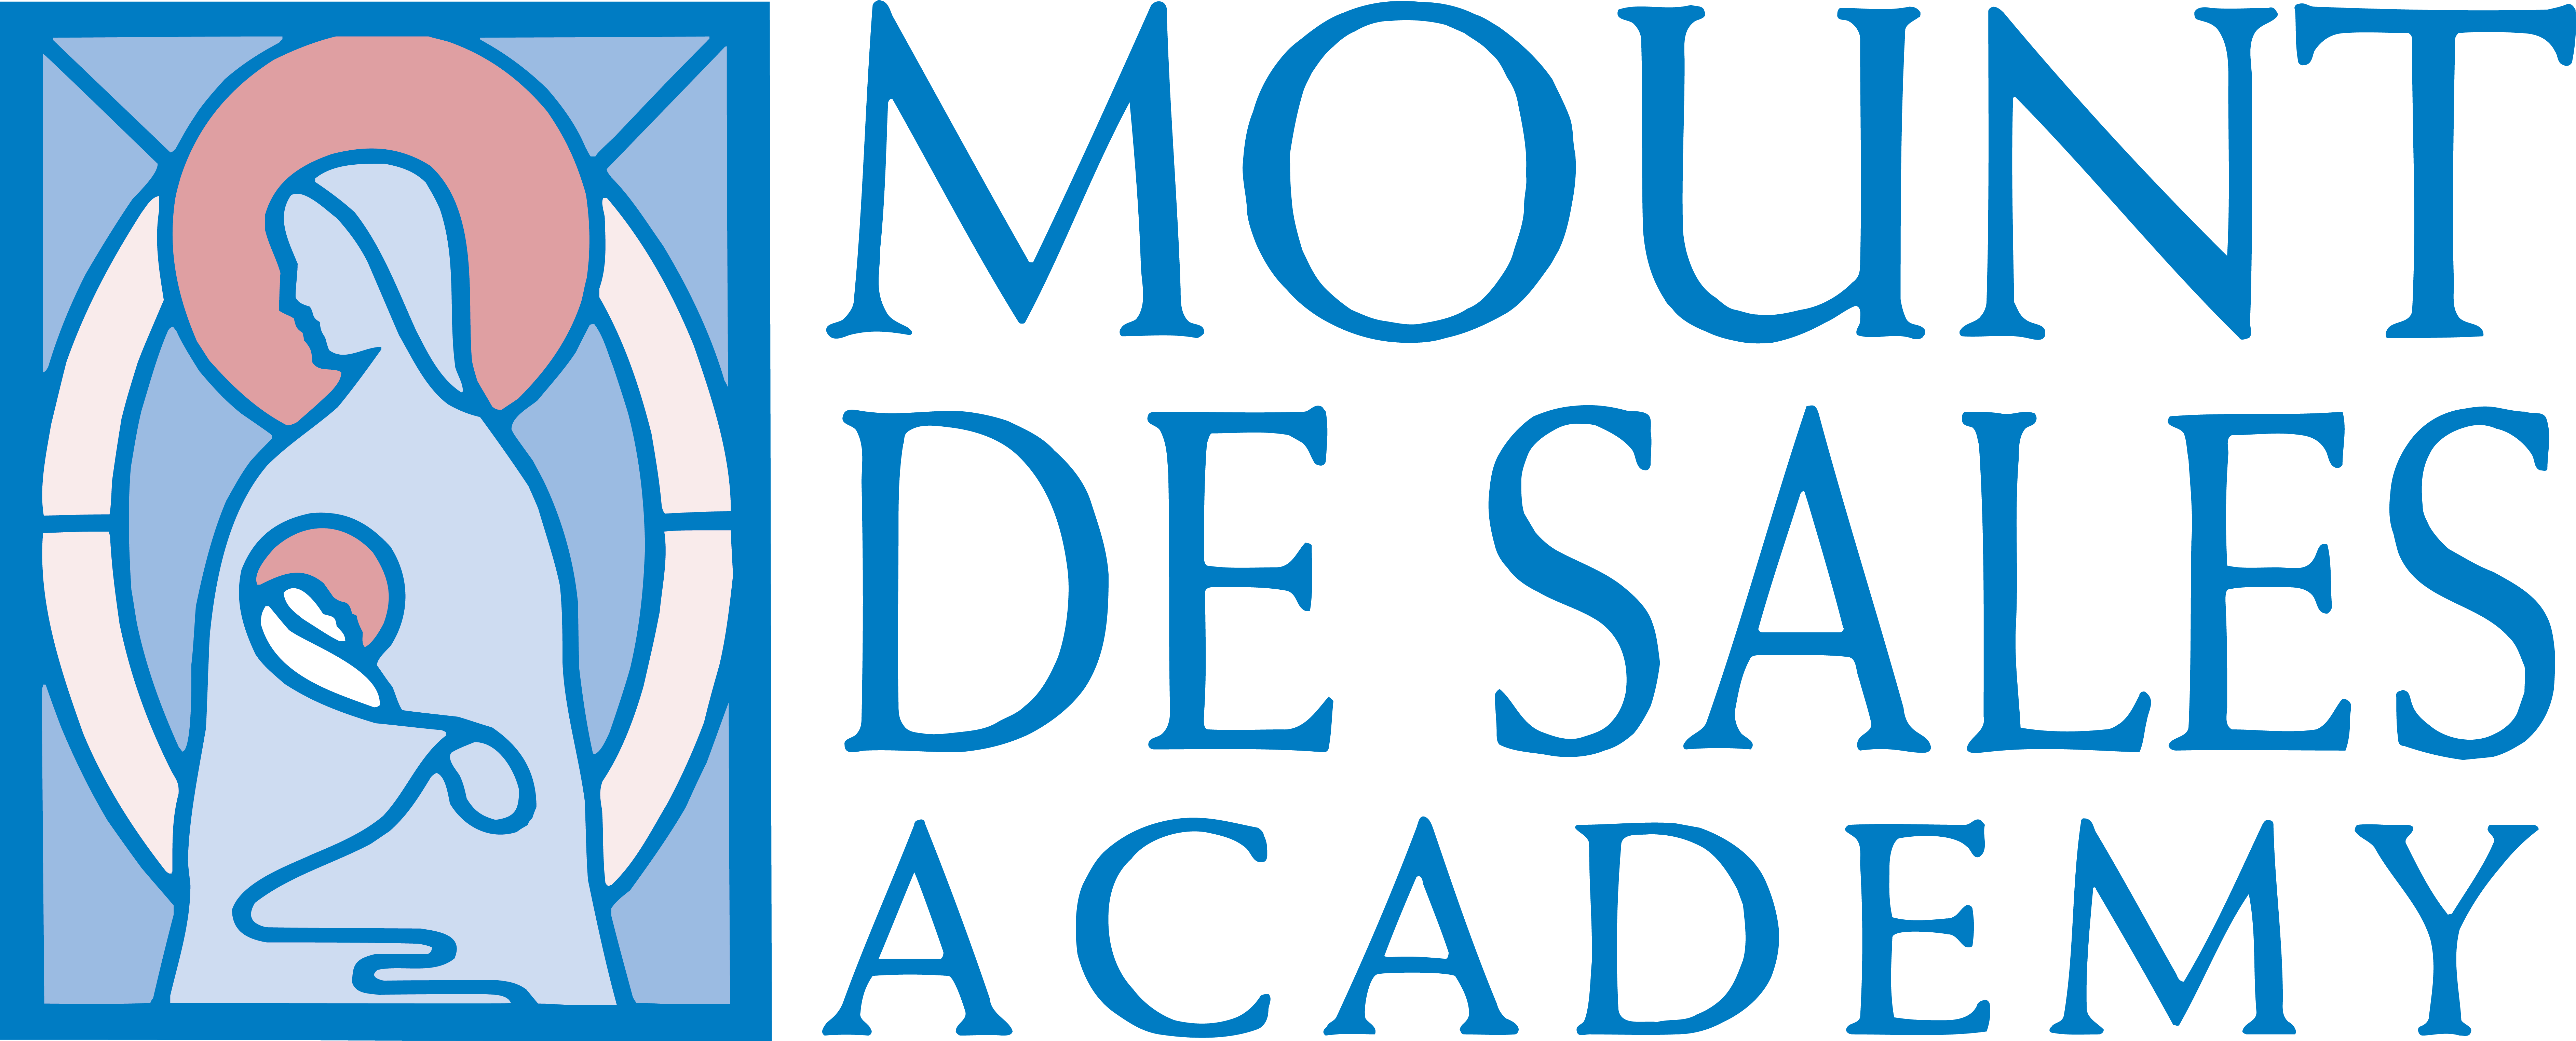 Mount de Sales Academy